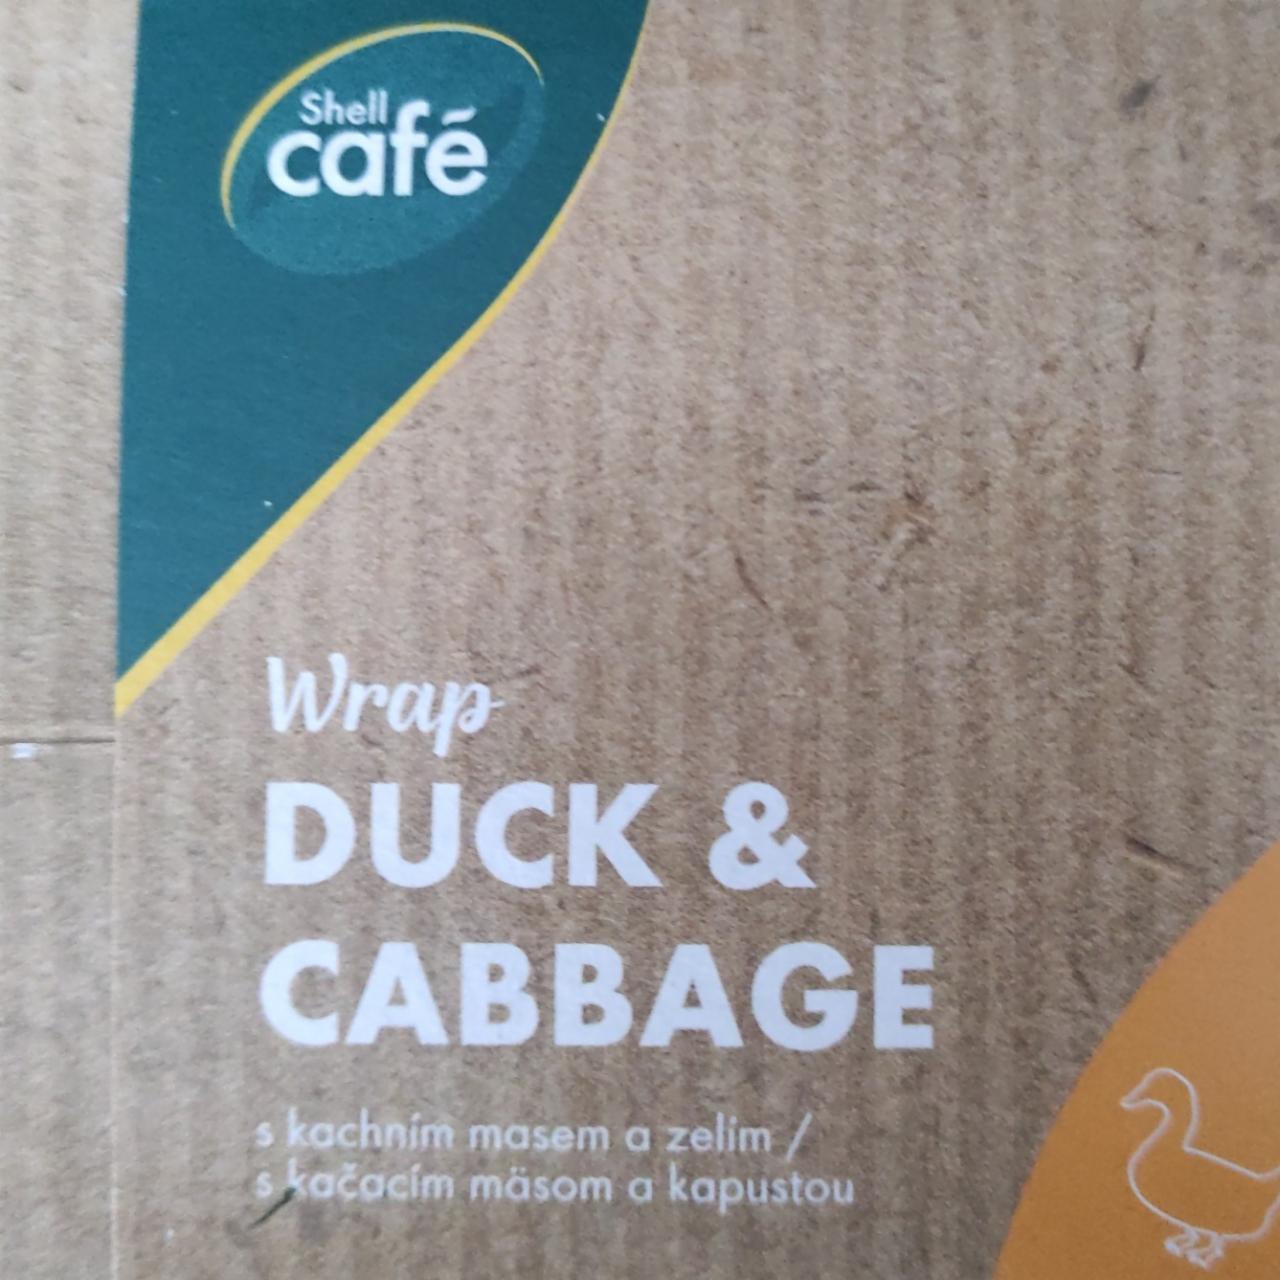 Fotografie - Wrap Duck & Cabbage Shell Café